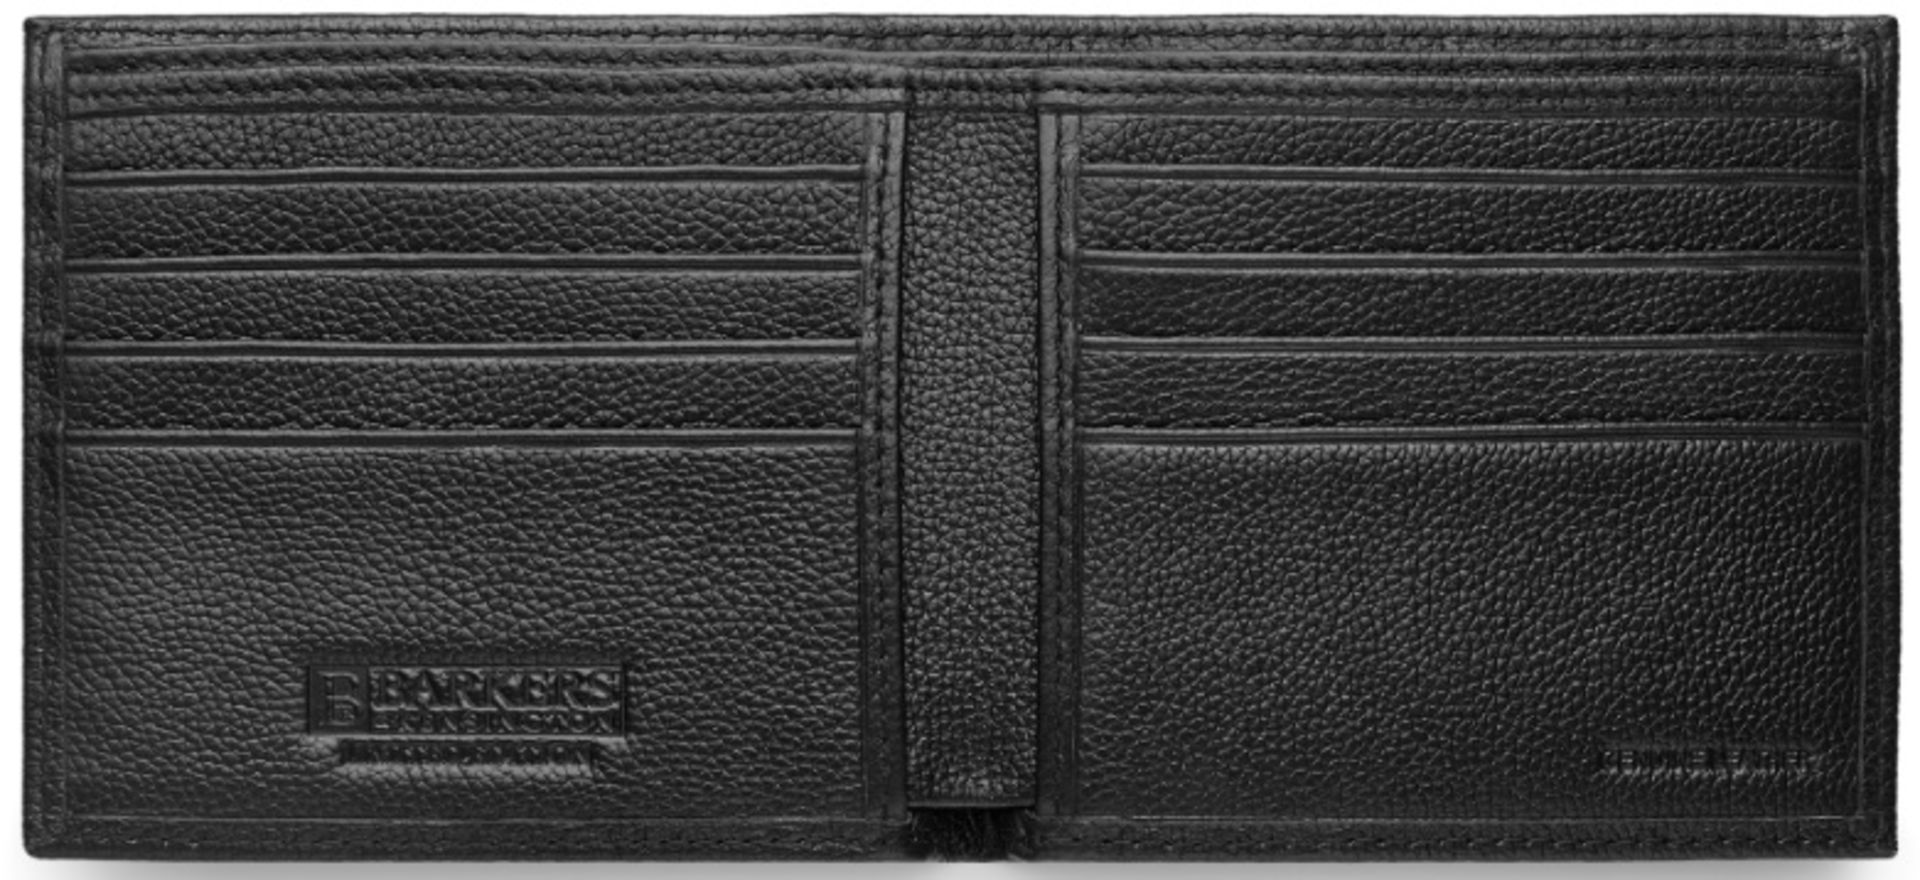 V Brand New Barkers Of Kensington Gents Black Genuine Leather Wallet (SRP £69.99) - Image 2 of 2